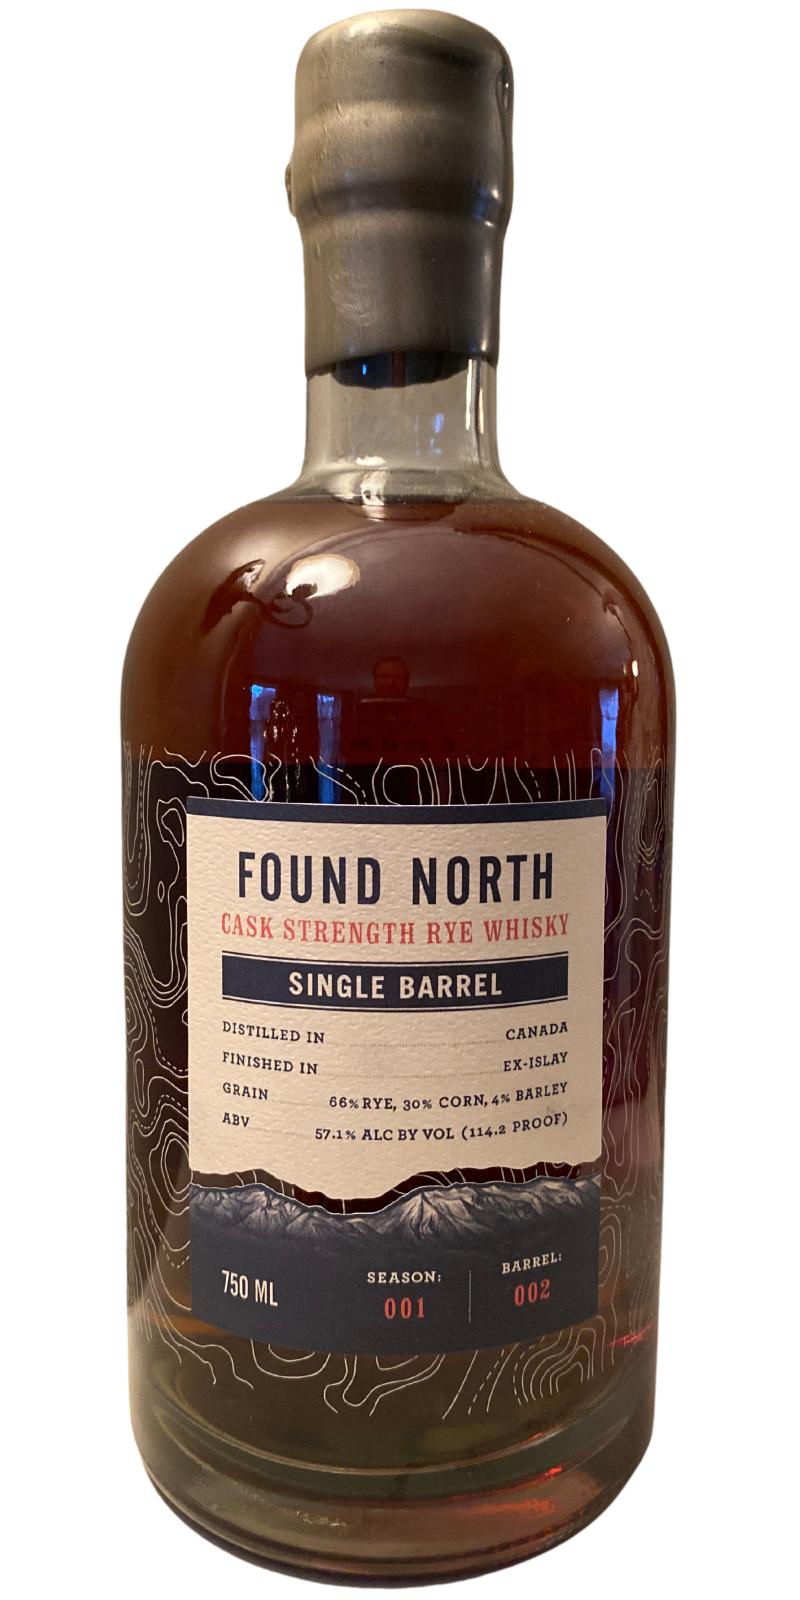 Found North Single Barrel FndN Season: 001 Ex-Islay Gordon's 57.1% 750ml